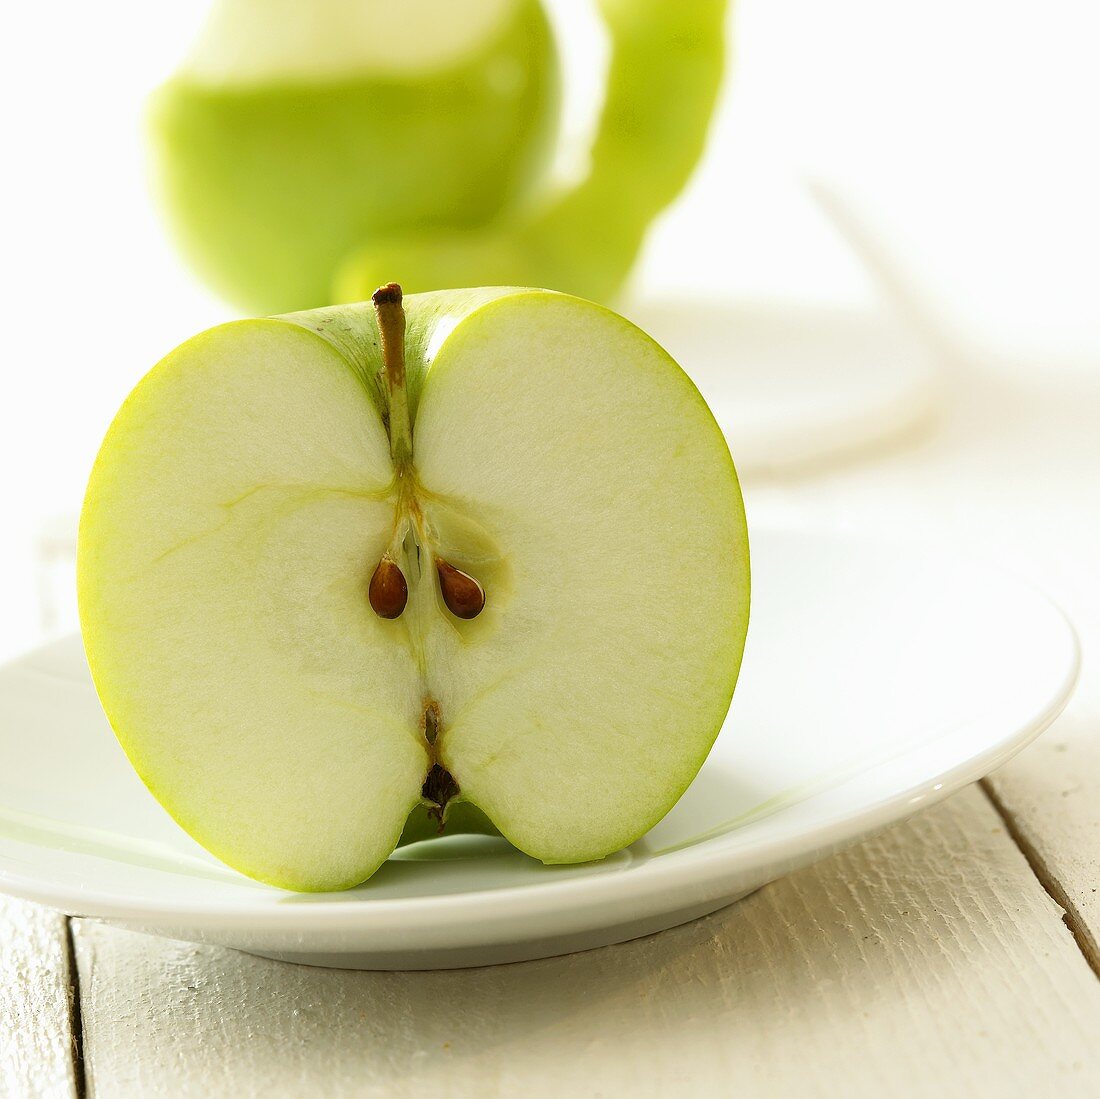 Half an apple on a plate